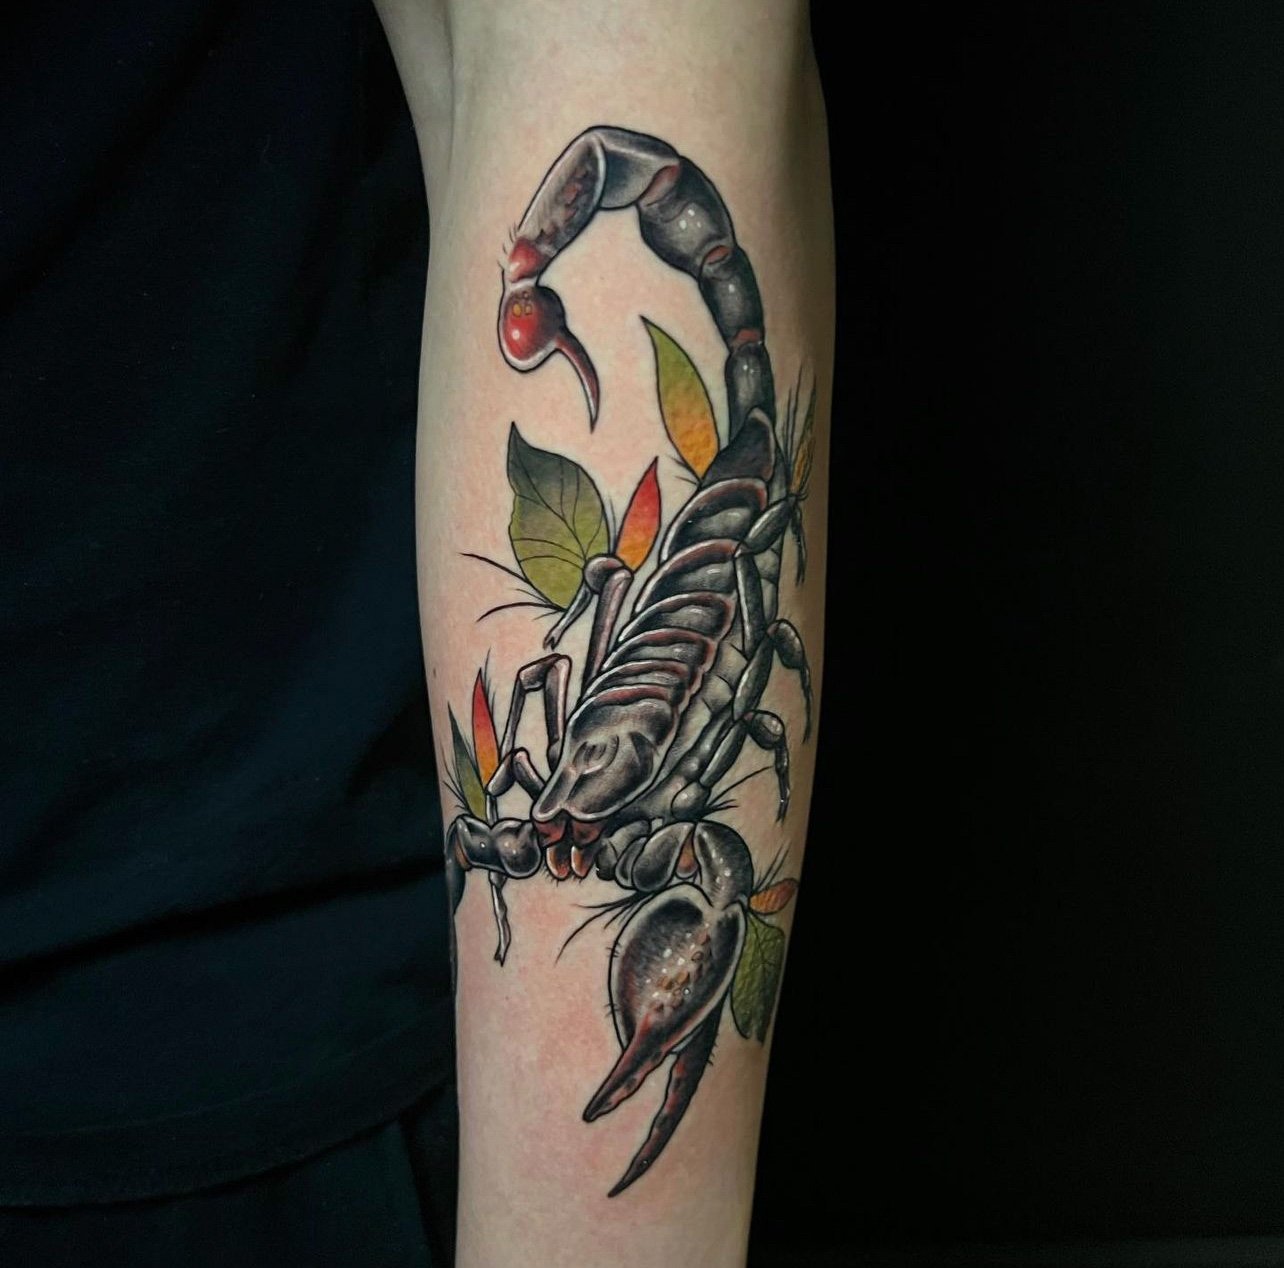 Tattoo uploaded by Paula Zeikmane • Traditional scorpion tattoo, artist  unknown /via tattoo-journal.com #traditional #scorpion • Tattoodo